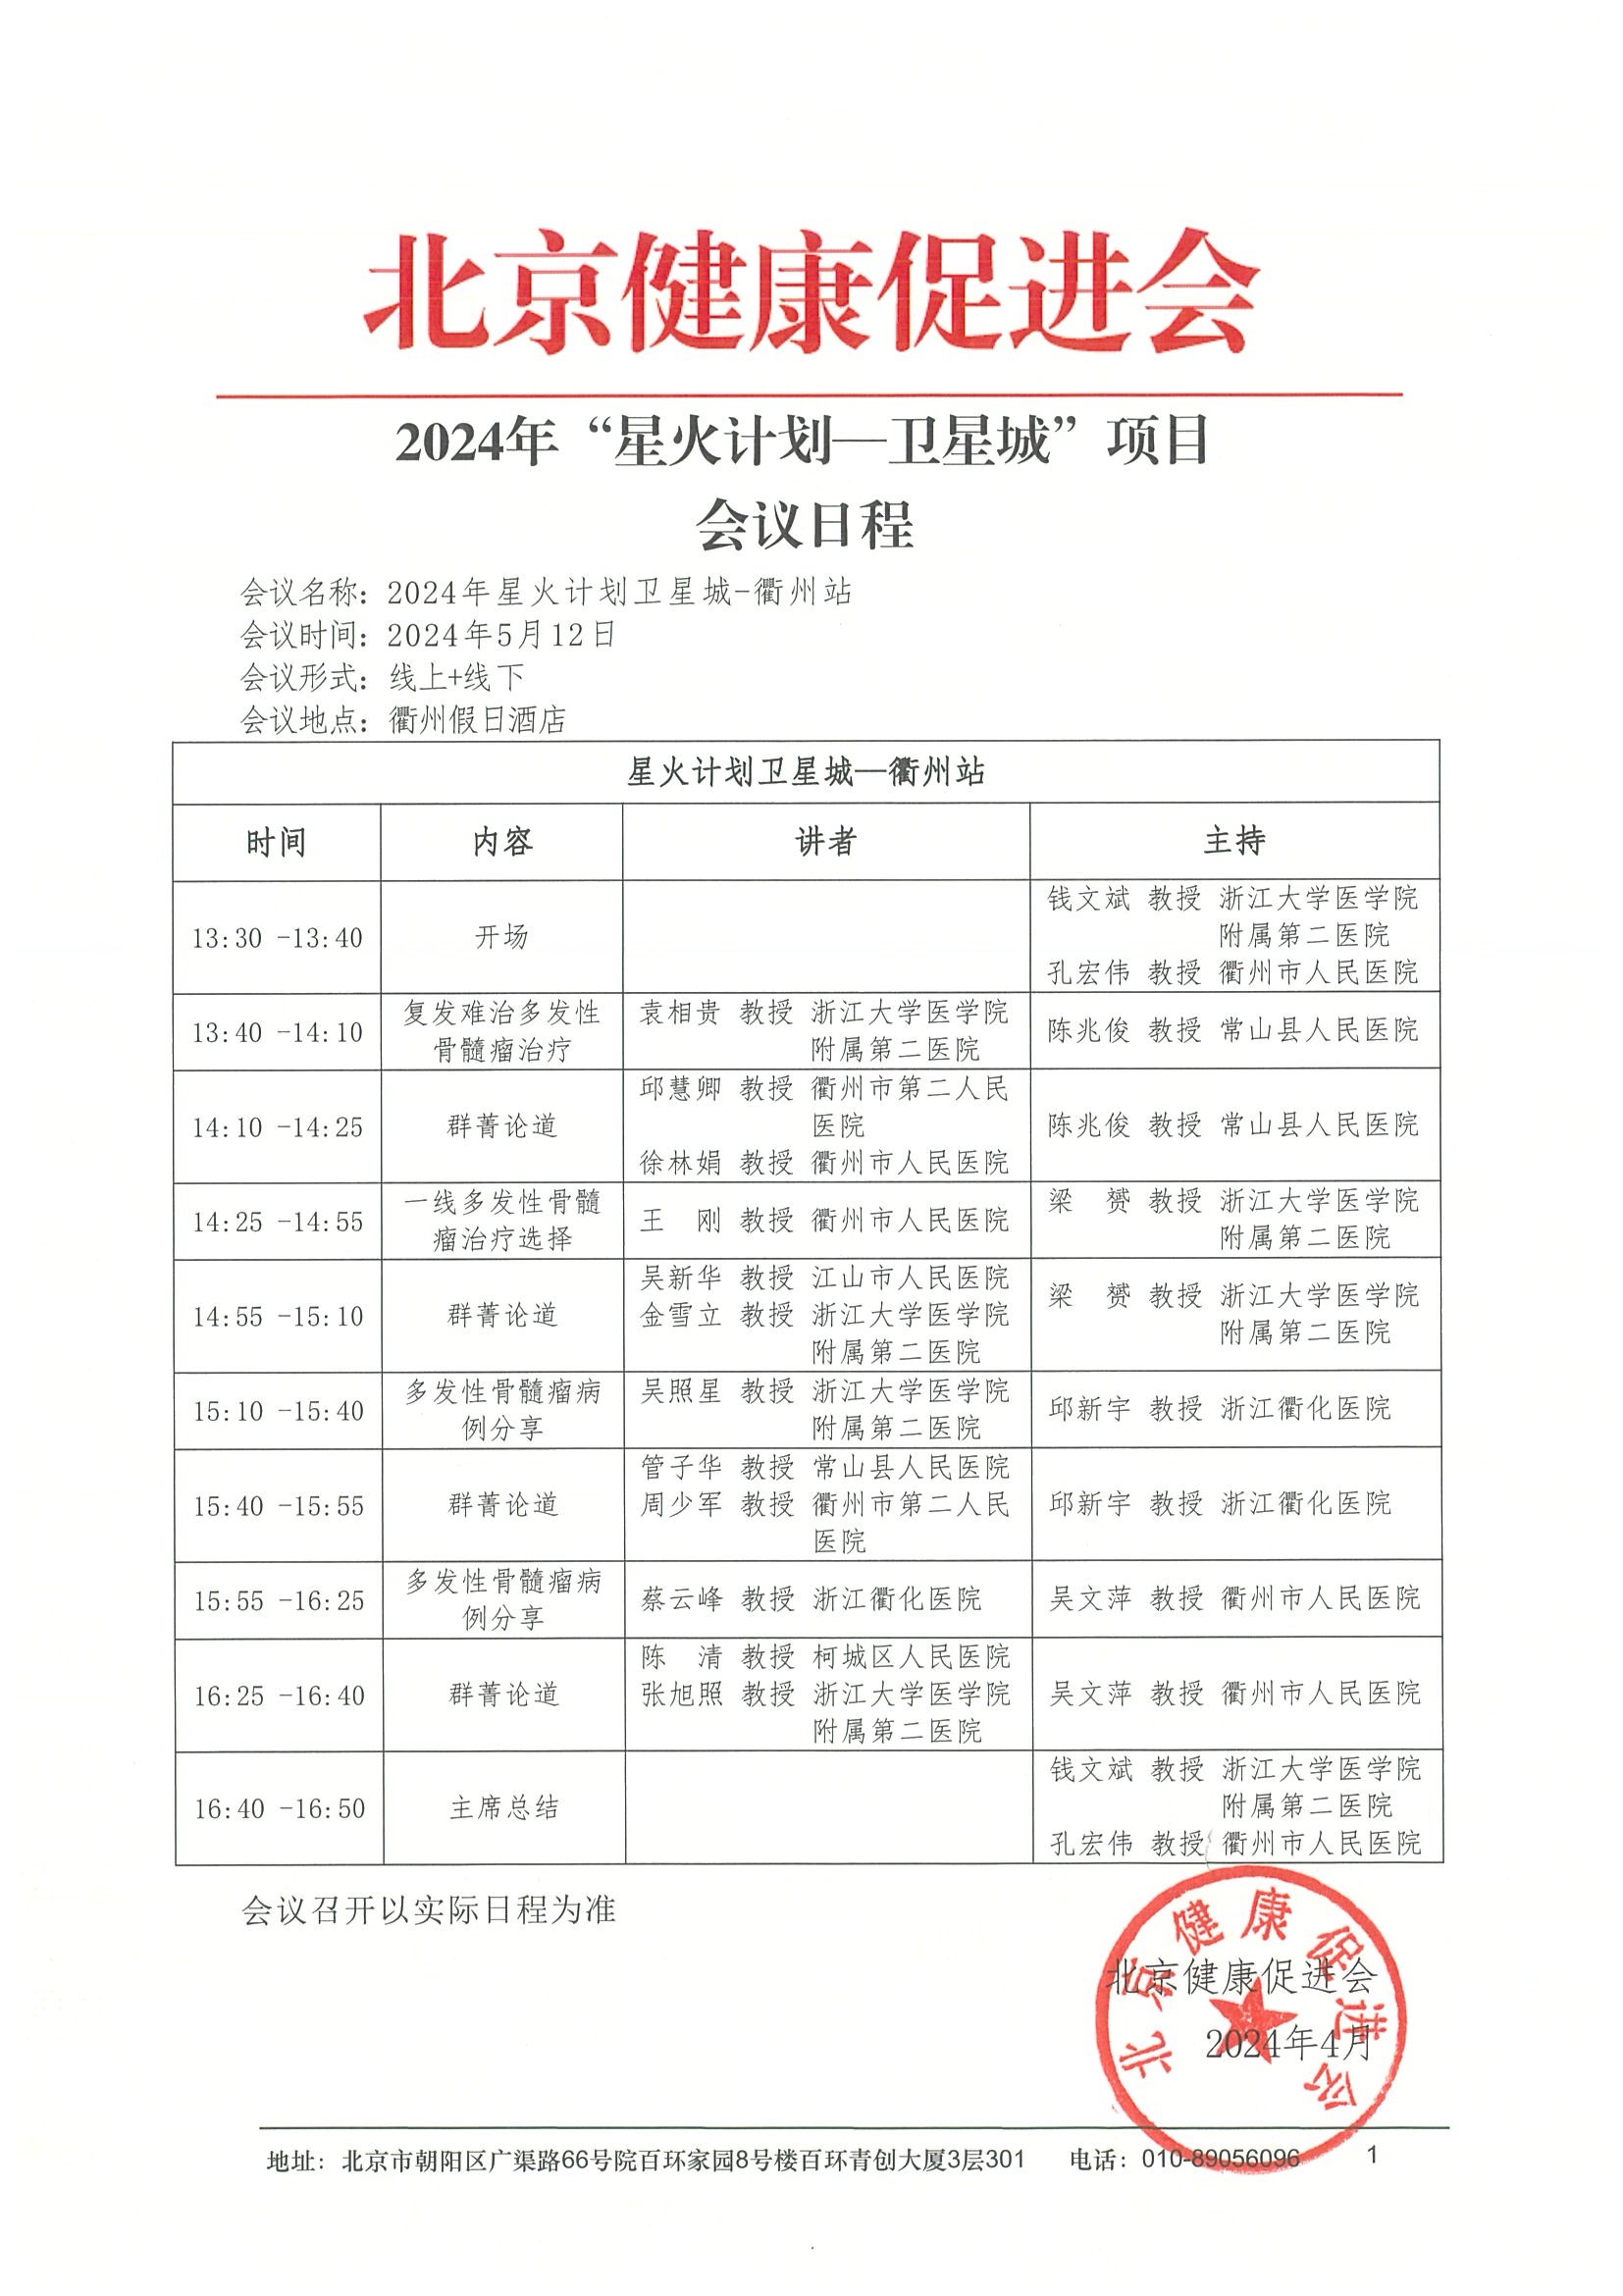 2024“星火计划卫星城-衢州站“会议日程.jpeg